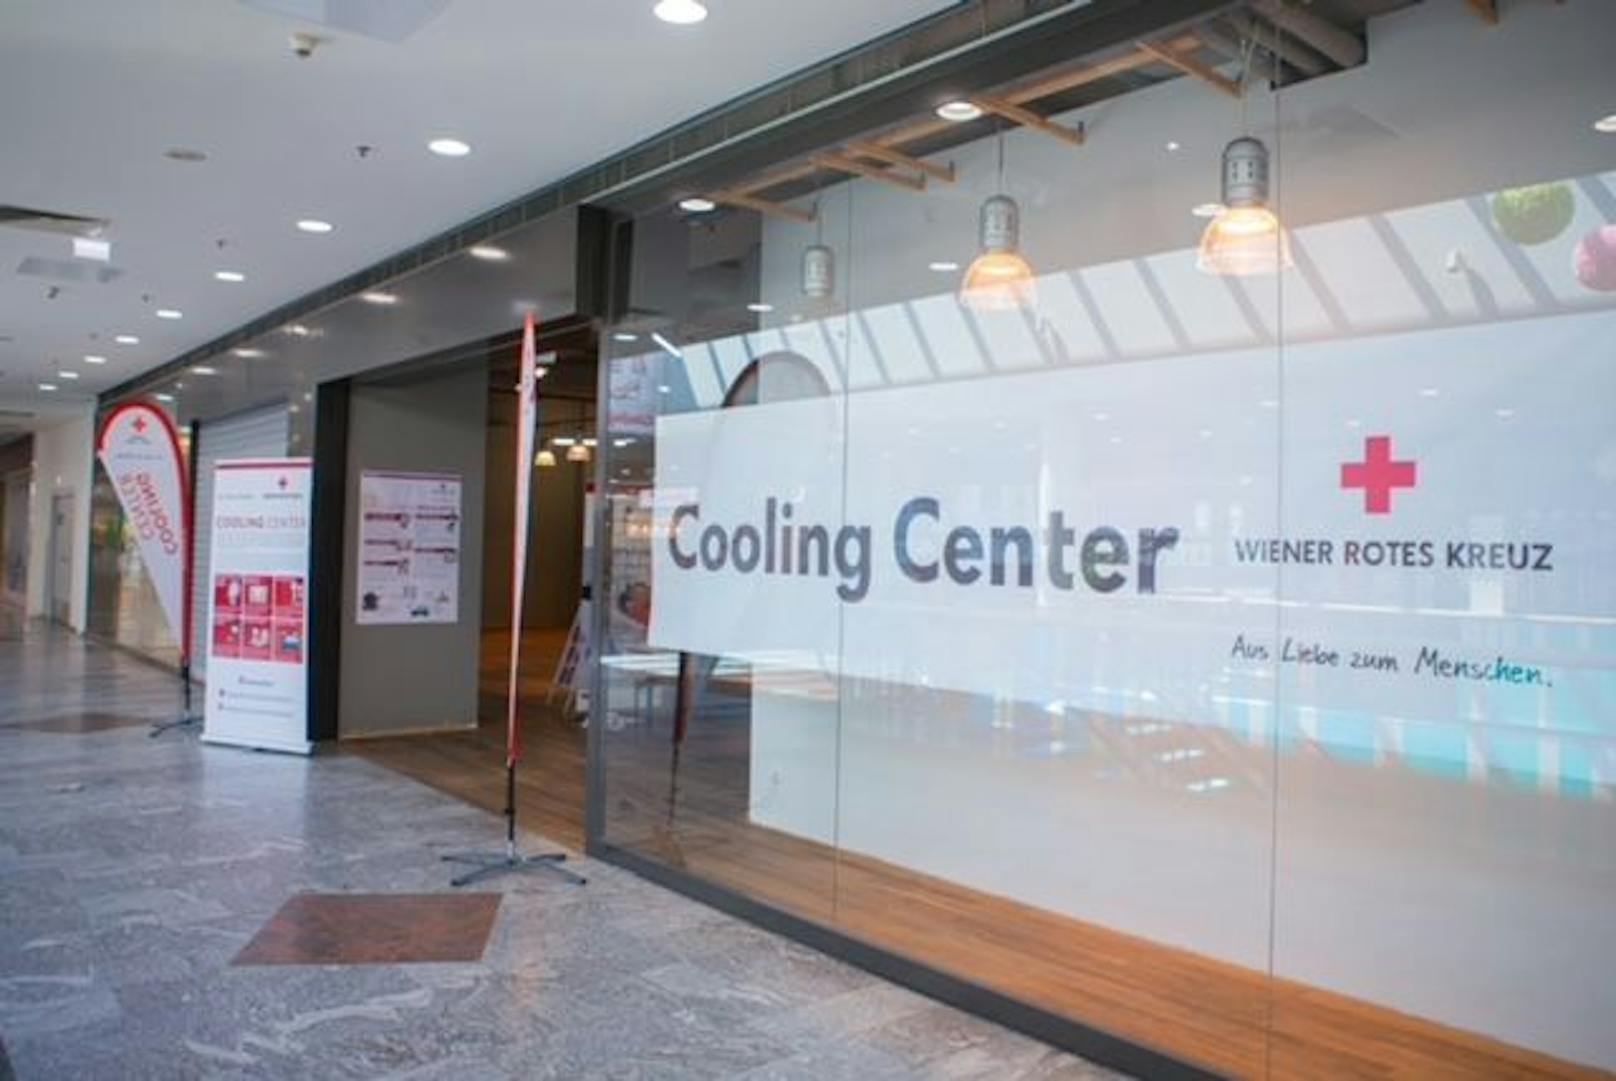 Das Cooling Center des Wiener Roten Kreuzes befindet sich im Obergeschoß neben dem Infopoint.